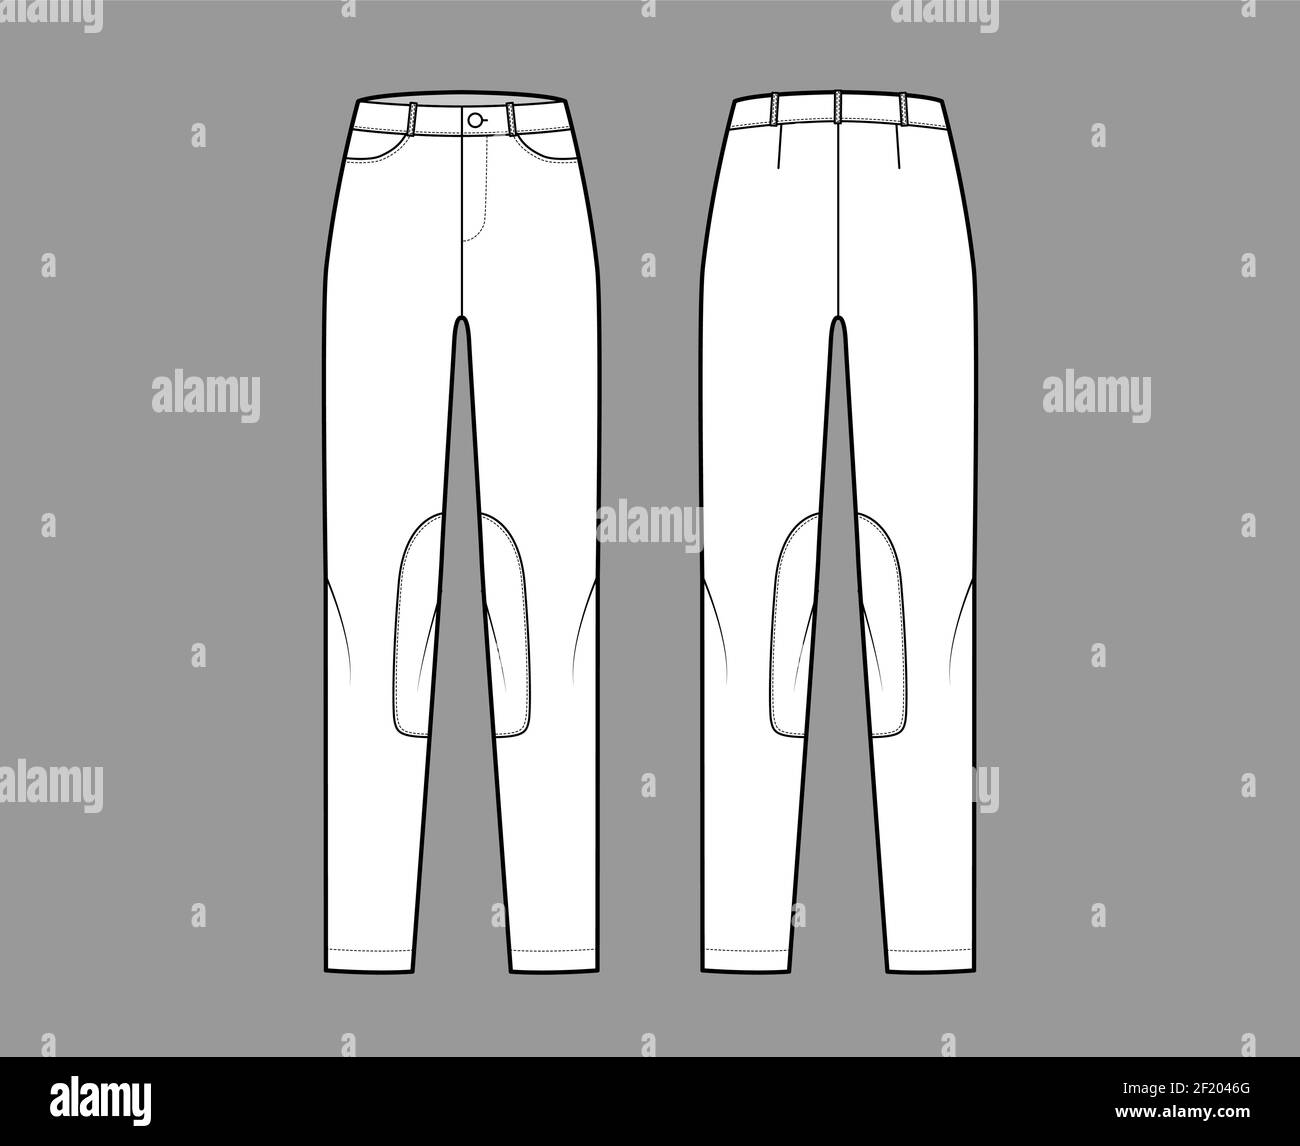 Ensemble de jeans Kentucky Jodhpurs pantalons denim illustration technique de la mode avec taille basse, taille, passants de ceinture, longueurs complètes. Modèle de vêtement plat à l'avant dans le dos, style blanc. Femmes, maquette de CAO unisex Illustration de Vecteur